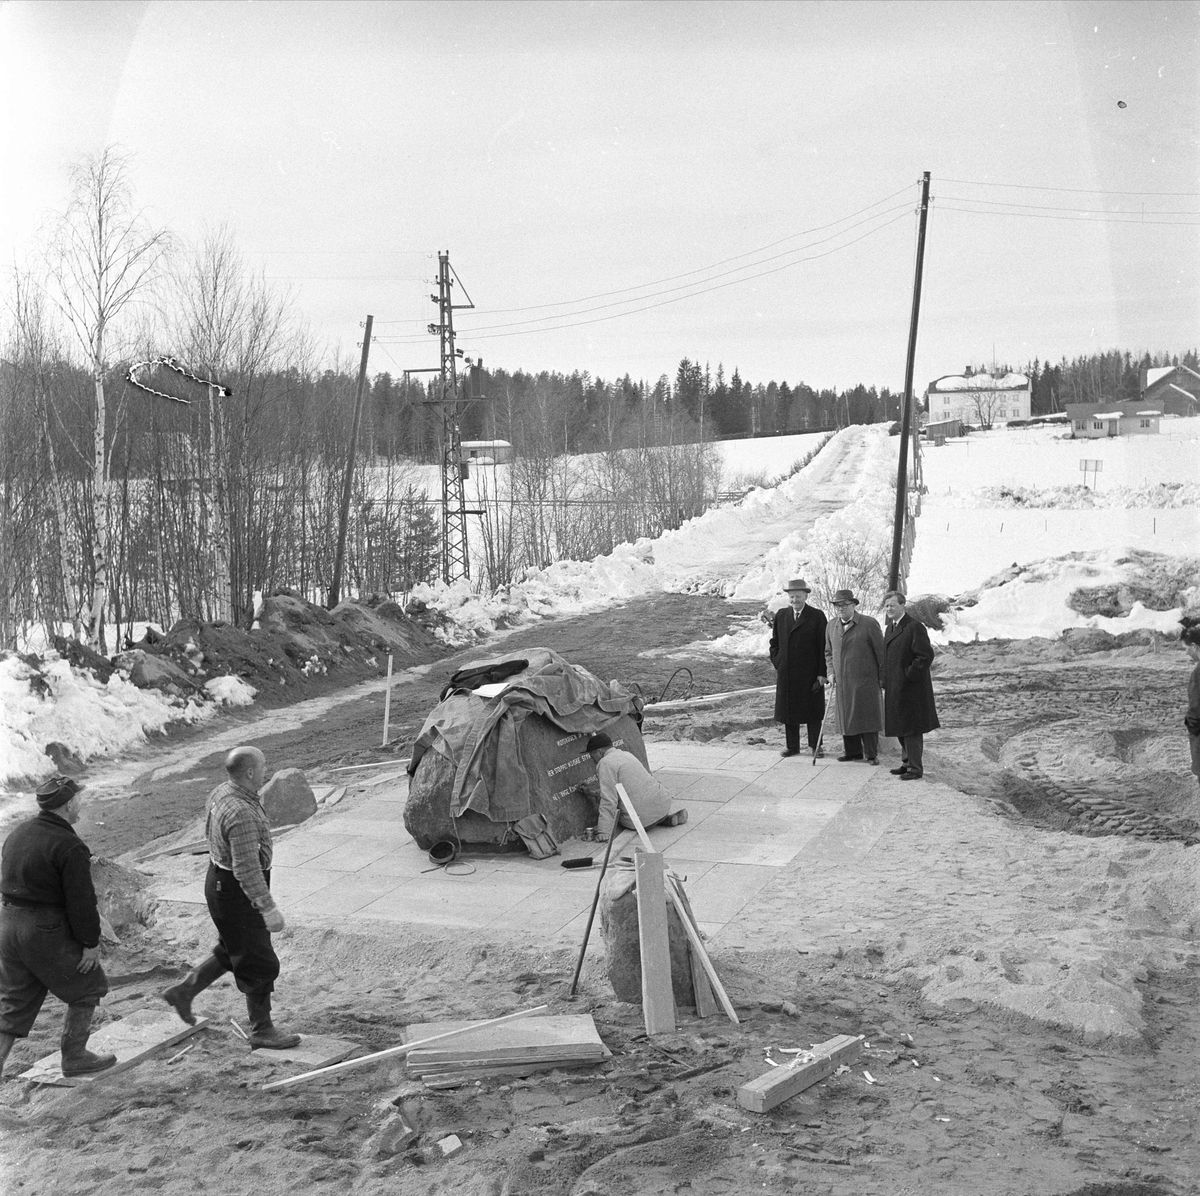 Midtskogen, Elverum, 05.04.1960. 20 år etter 9. april 1940. Minnesmerke over norske troppebevegelser.